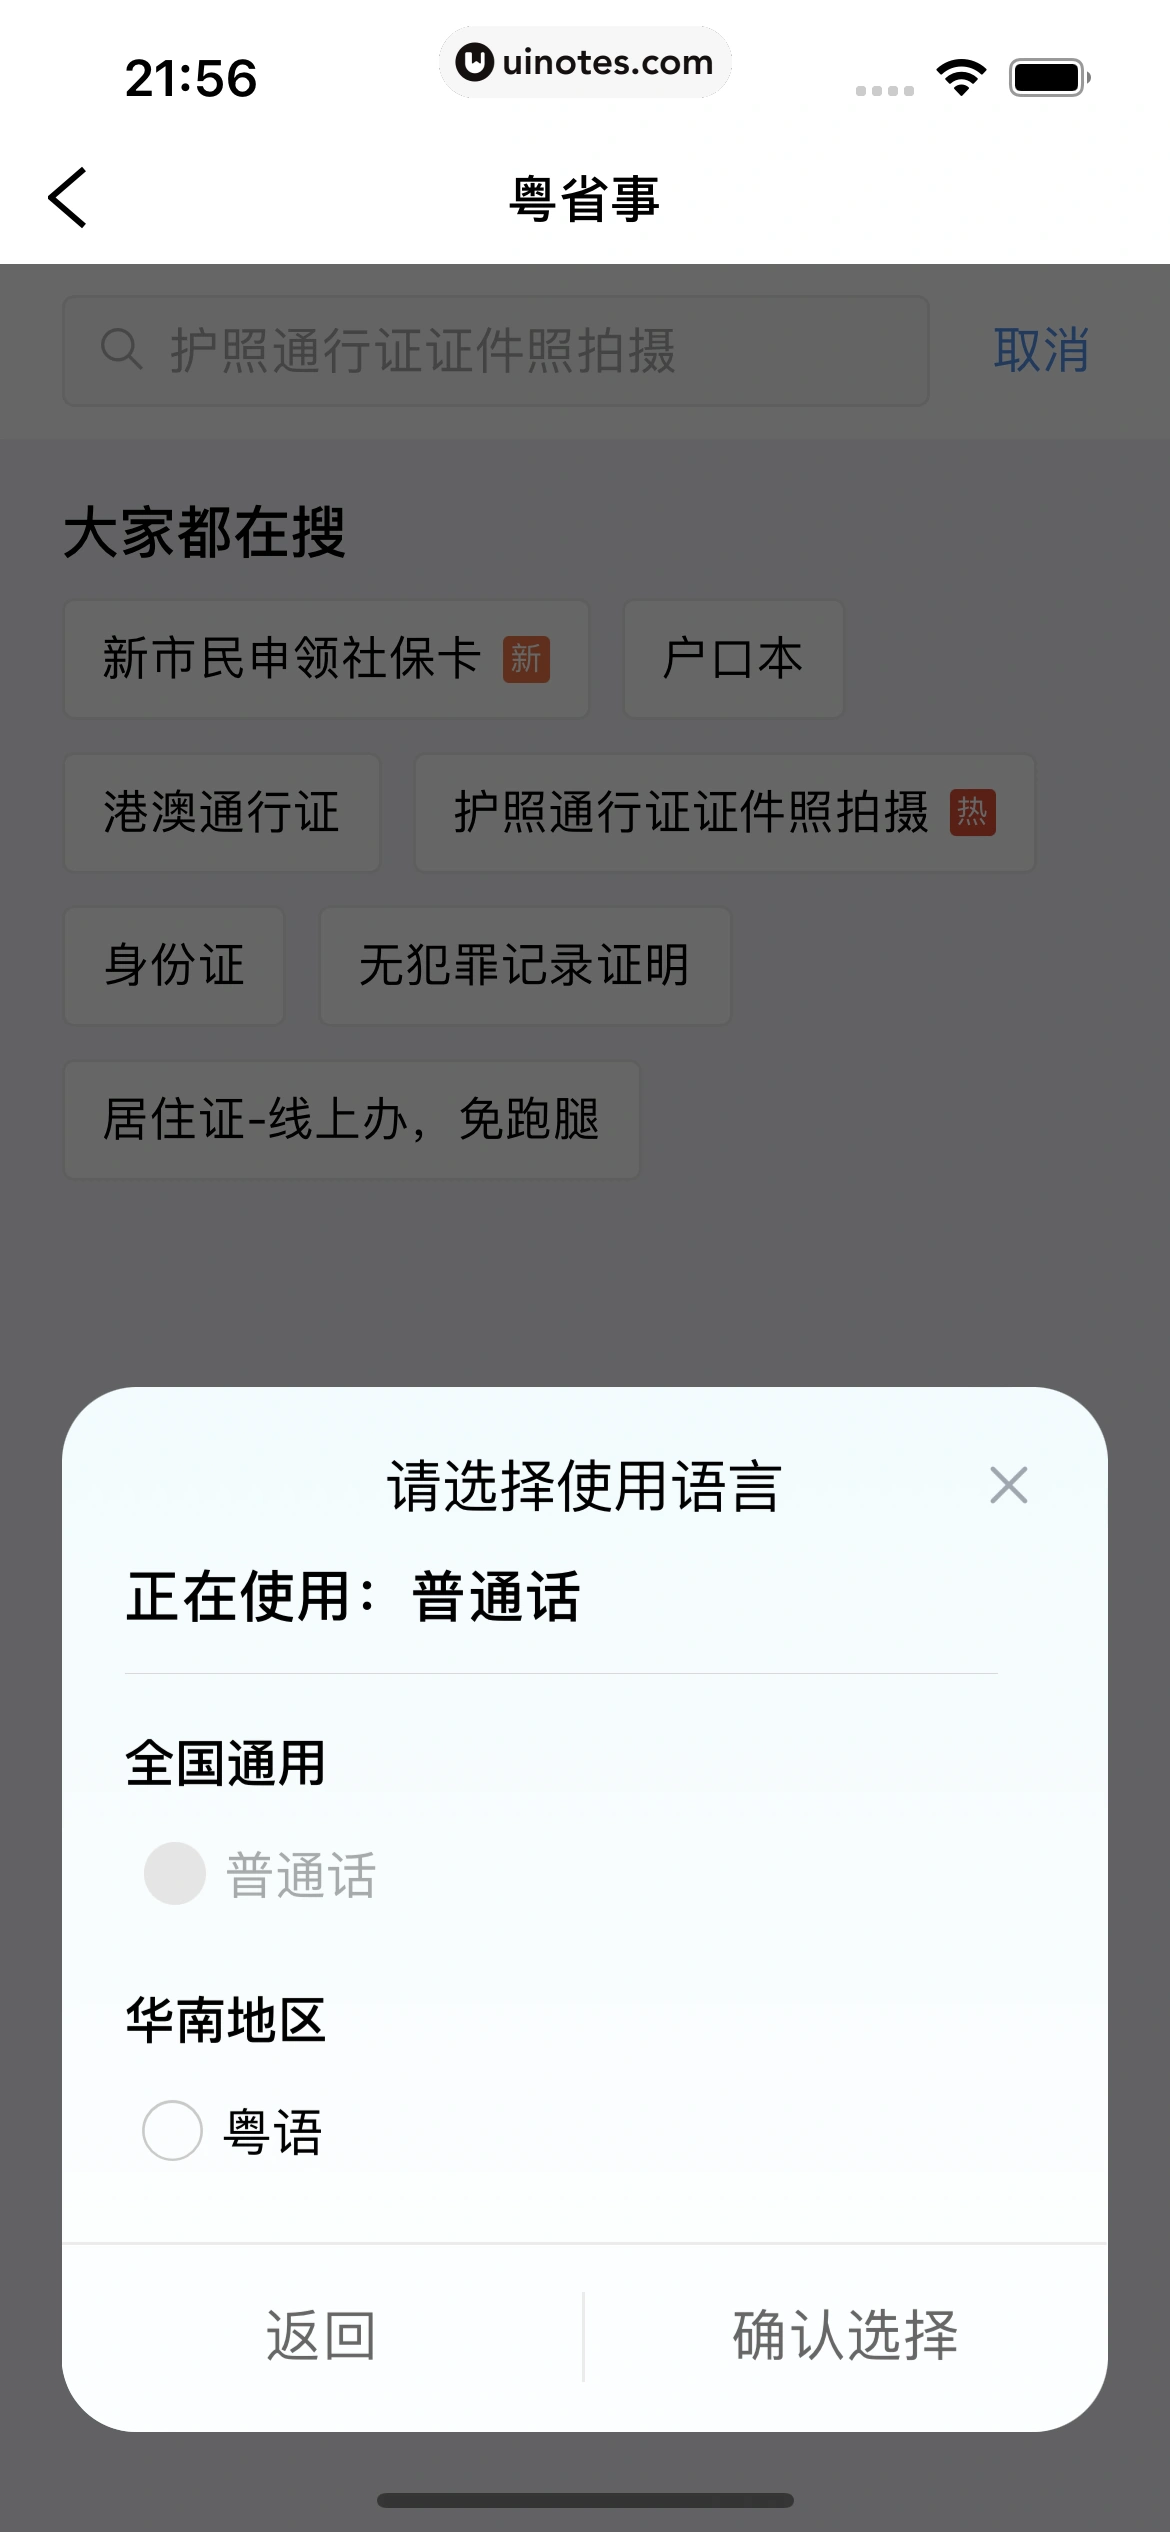 粤省事 App 截图 108 - UI Notes